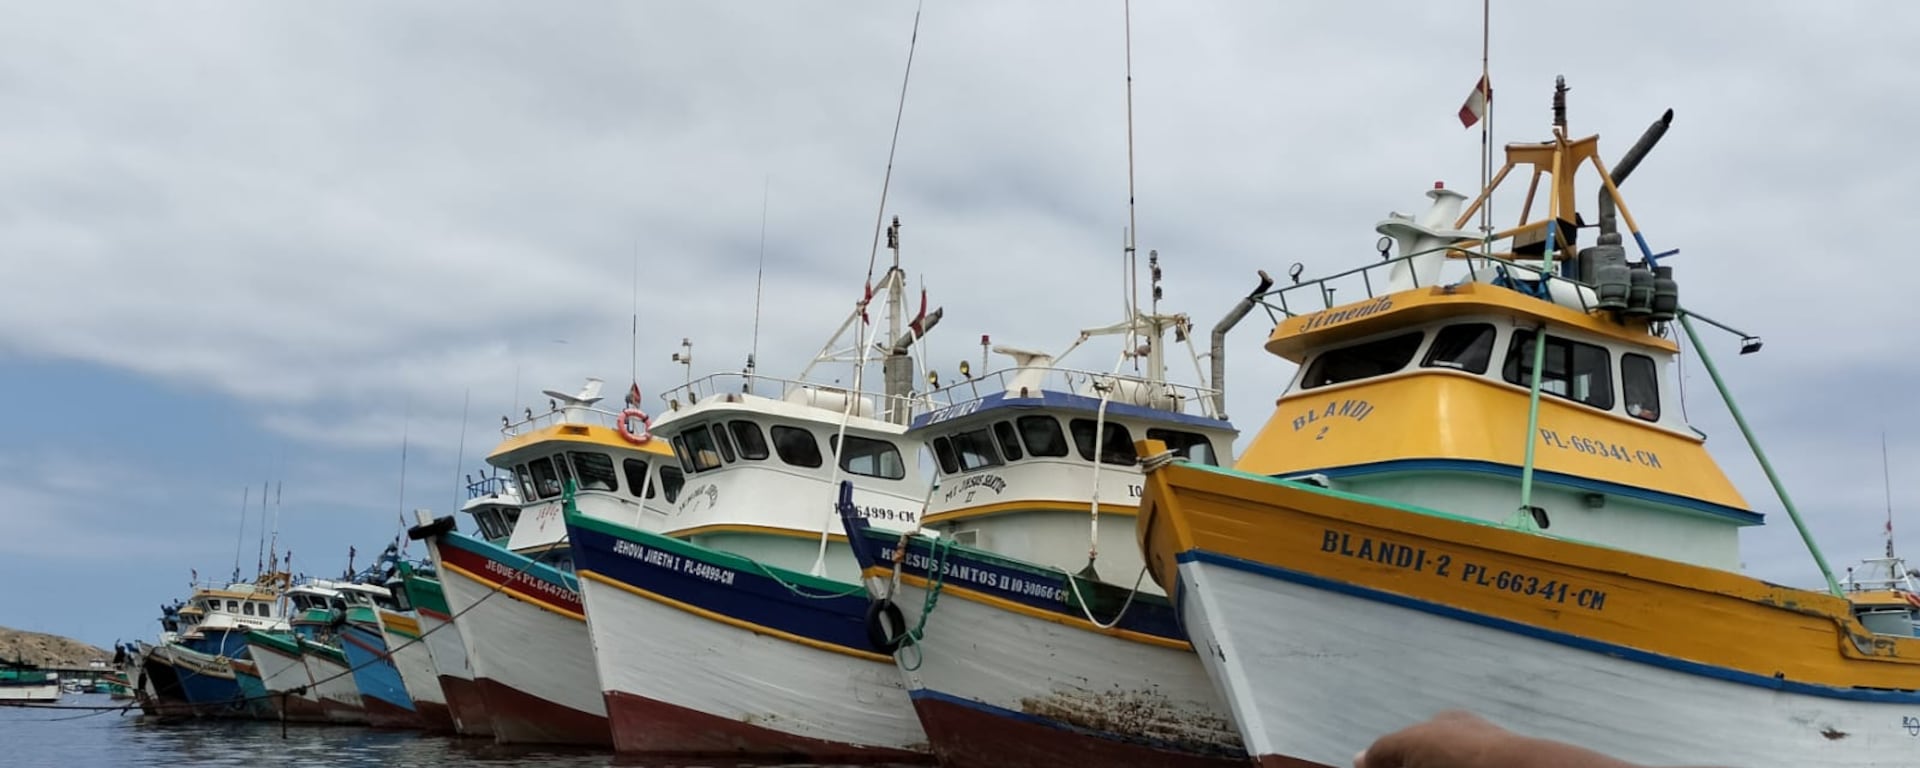 Las combis del mar: pescadores informales clonan matrículas para operar sin control